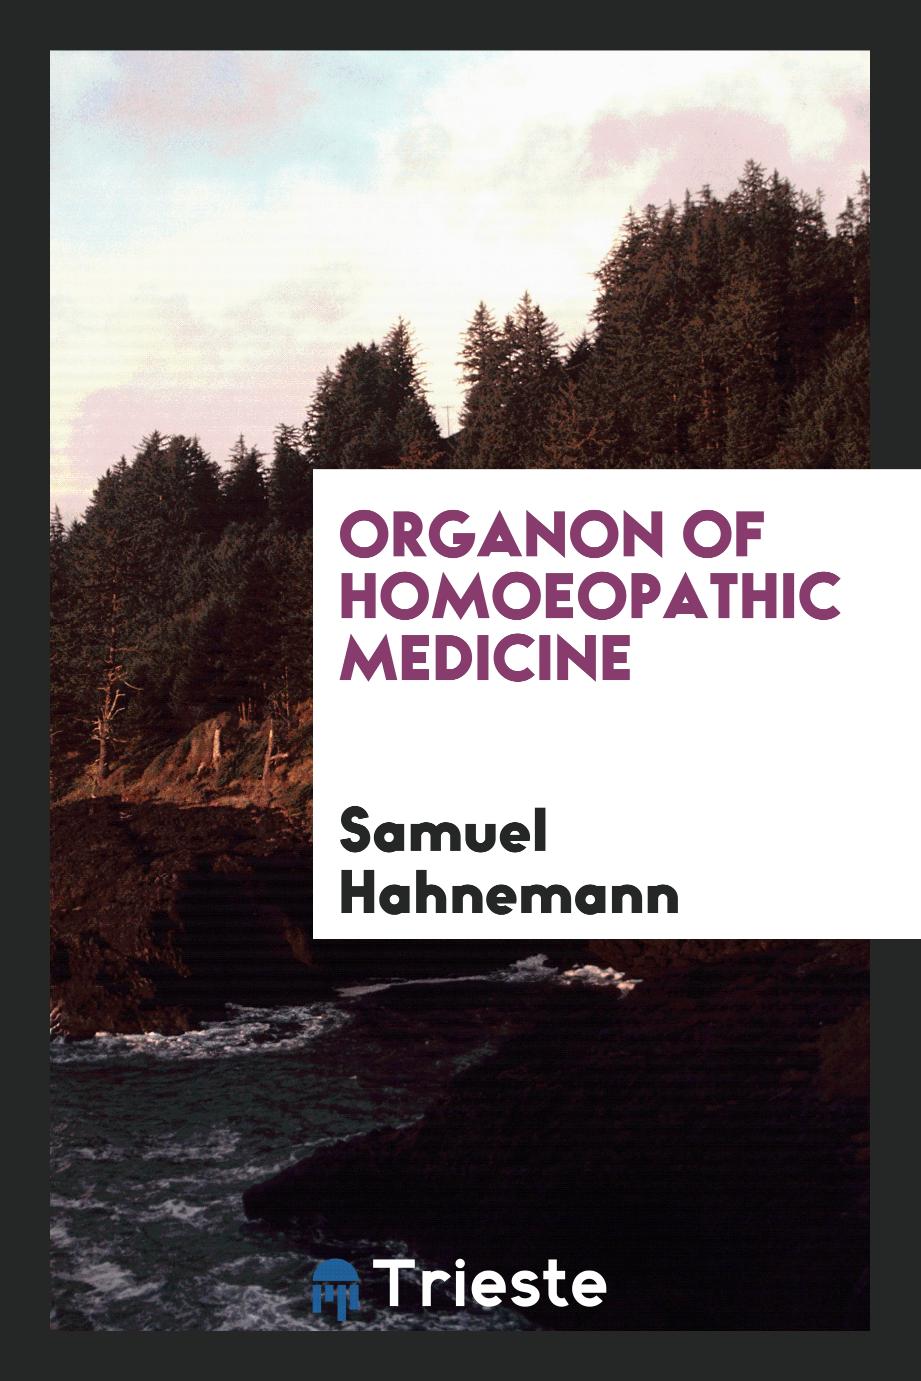 Samuel Hahnemann - Organon of Homoeopathic Medicine